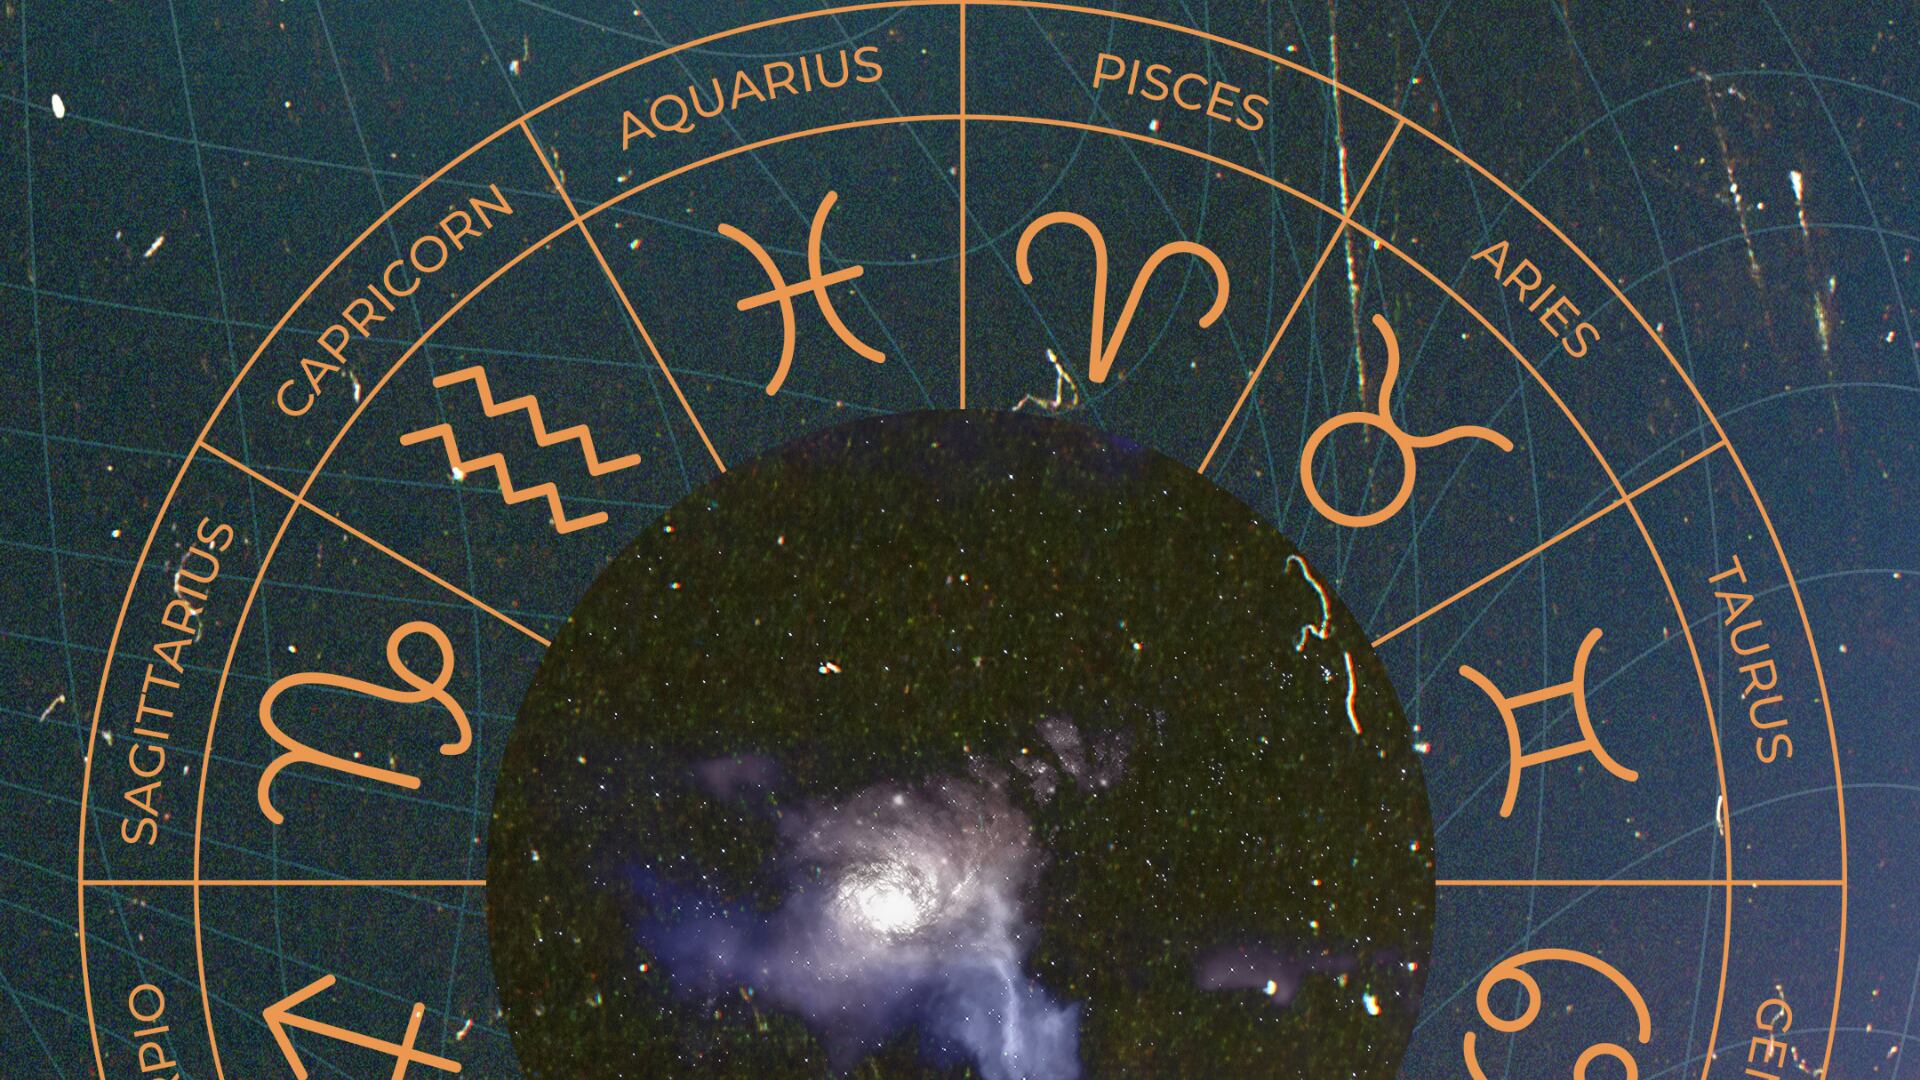 Horóscopo, los signos del zodiaco.